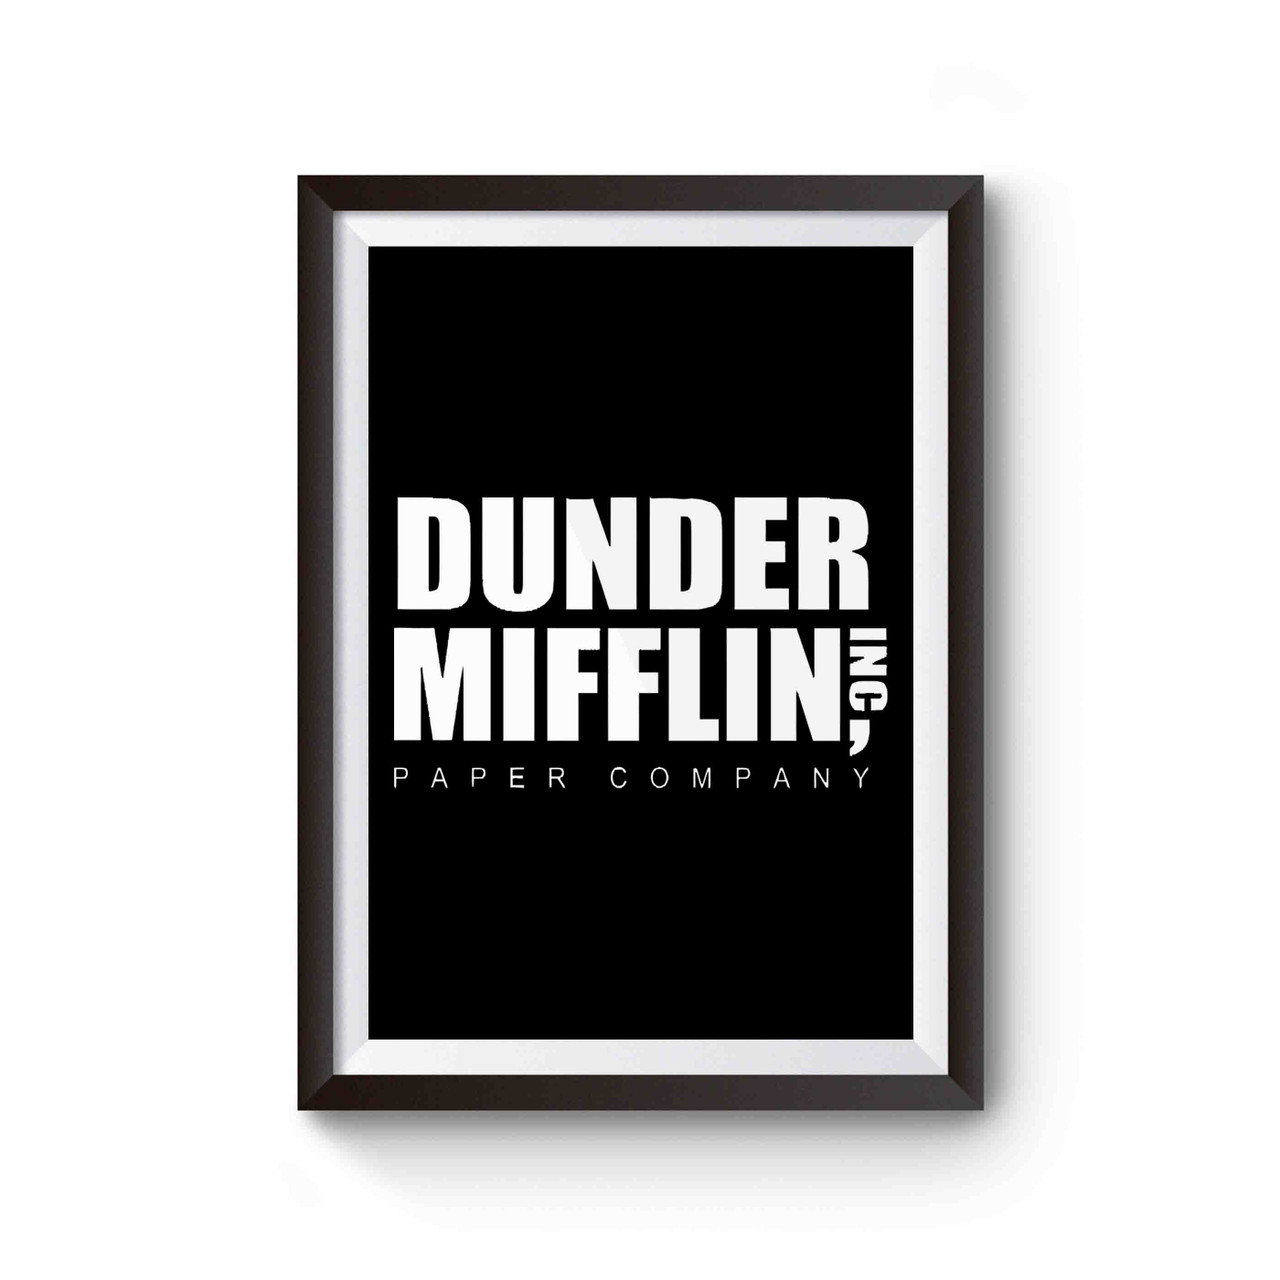 The Office Dunder Mifflin, Inc. - Logo